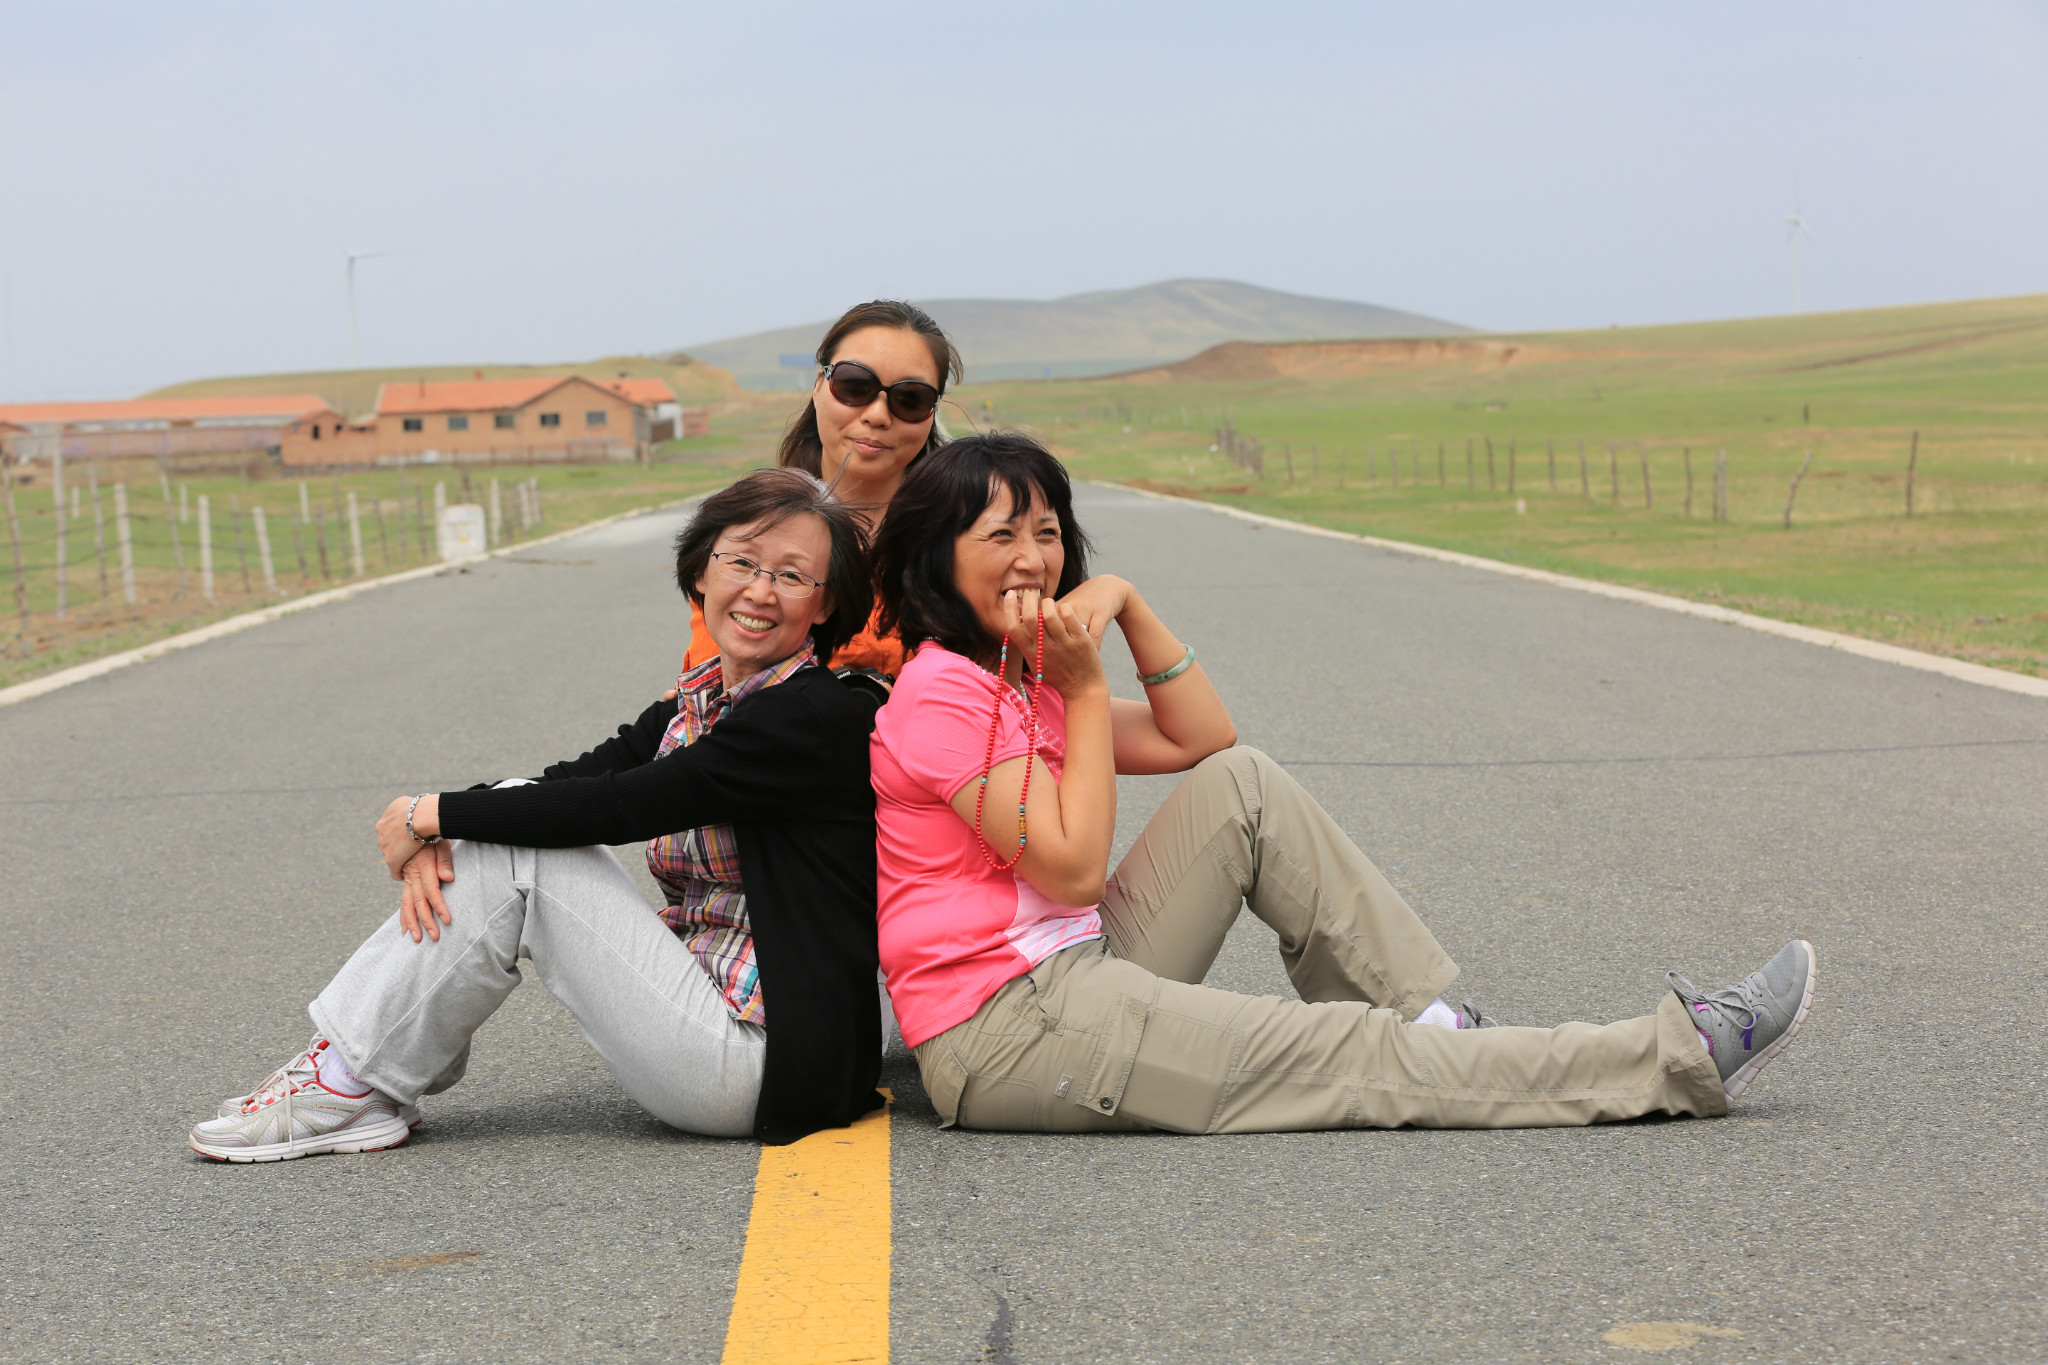 娜娜,温老师和我,三人在空无一车的公路上摆拍起来.